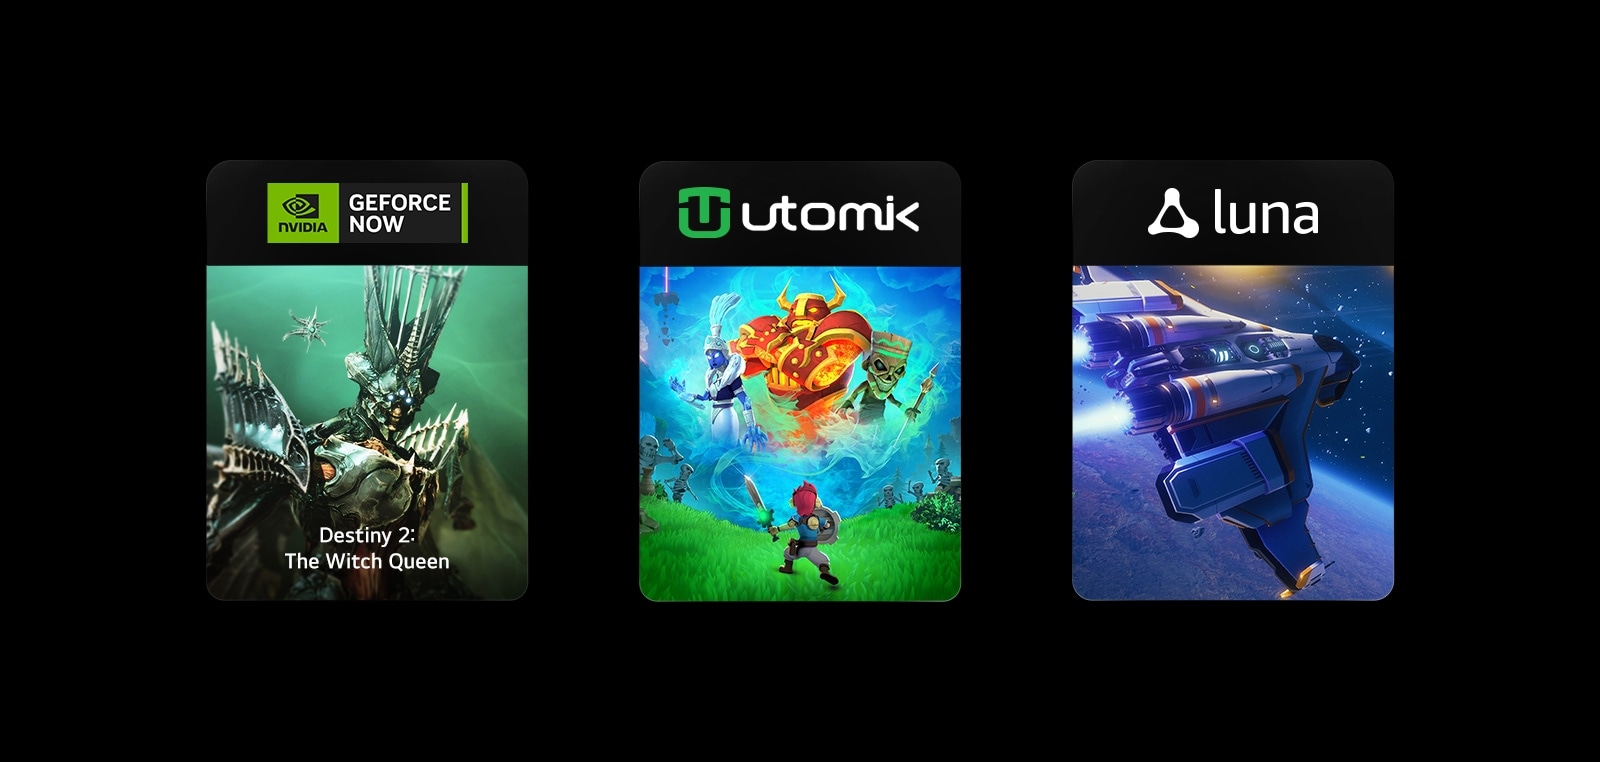  Três blocos de imagens, cada um com o logótipo e imagens do jogo de GeForce NOW, Utomik e Luna.